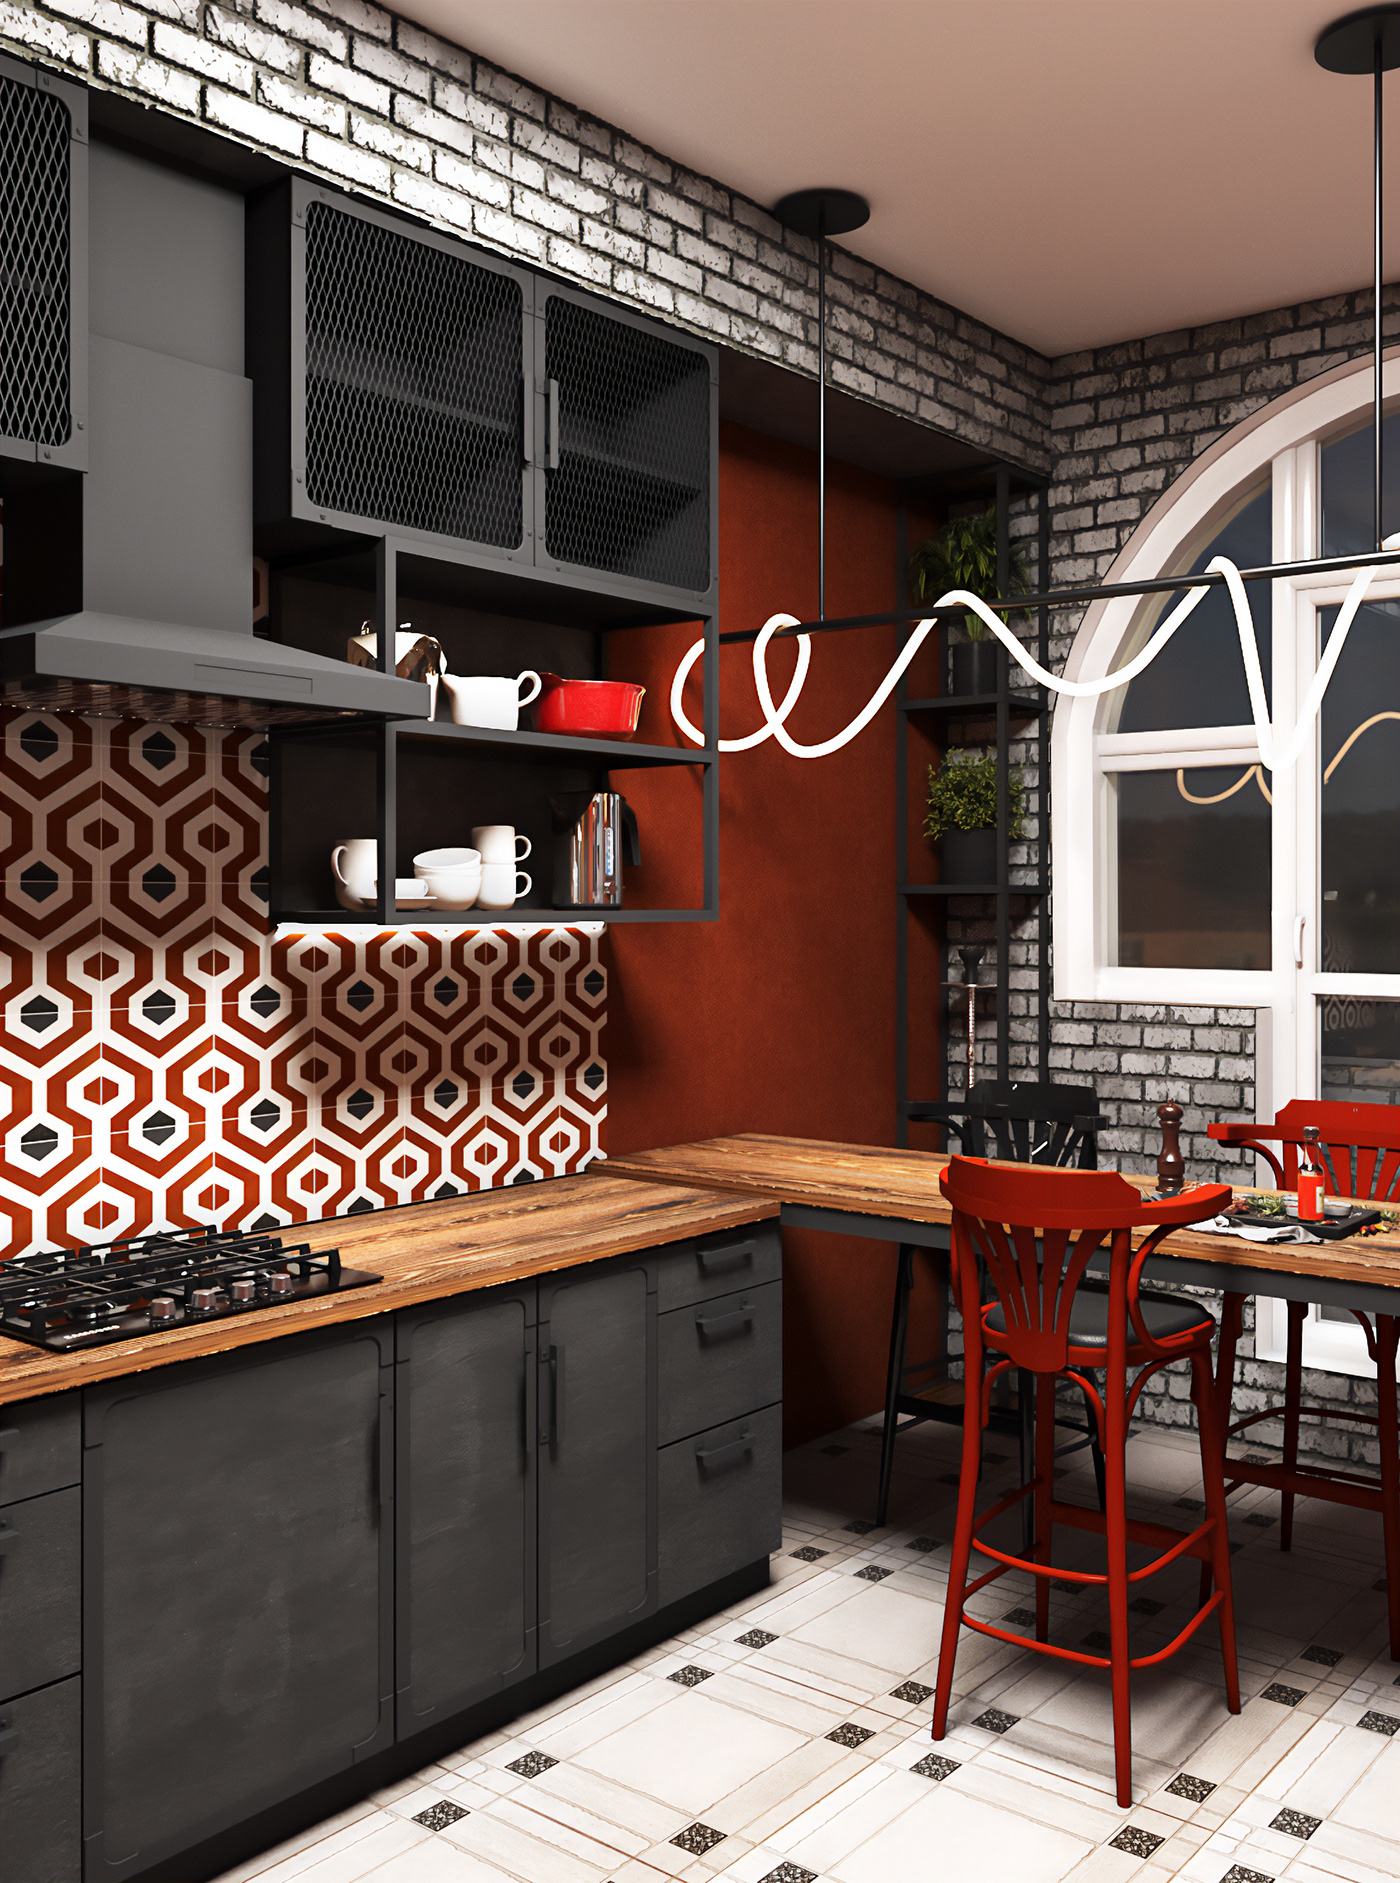 3D 3ds max architecture corona render  Interior interior design  LOFT loft interior loft kitchen tile